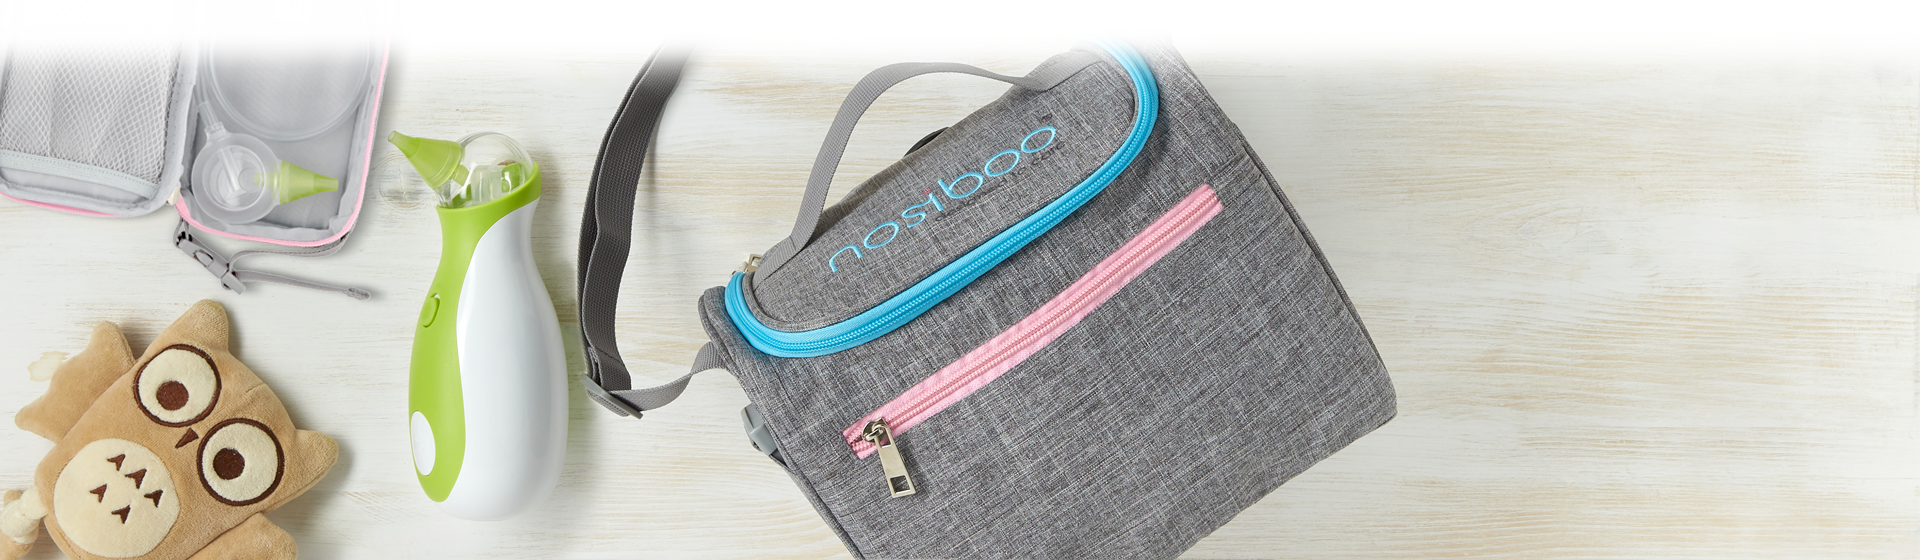 Erfahren Sie mehr über die beiden Taschen Nosiboo Bag Baby Organizer und Nosiboo Bag Hygienetasche